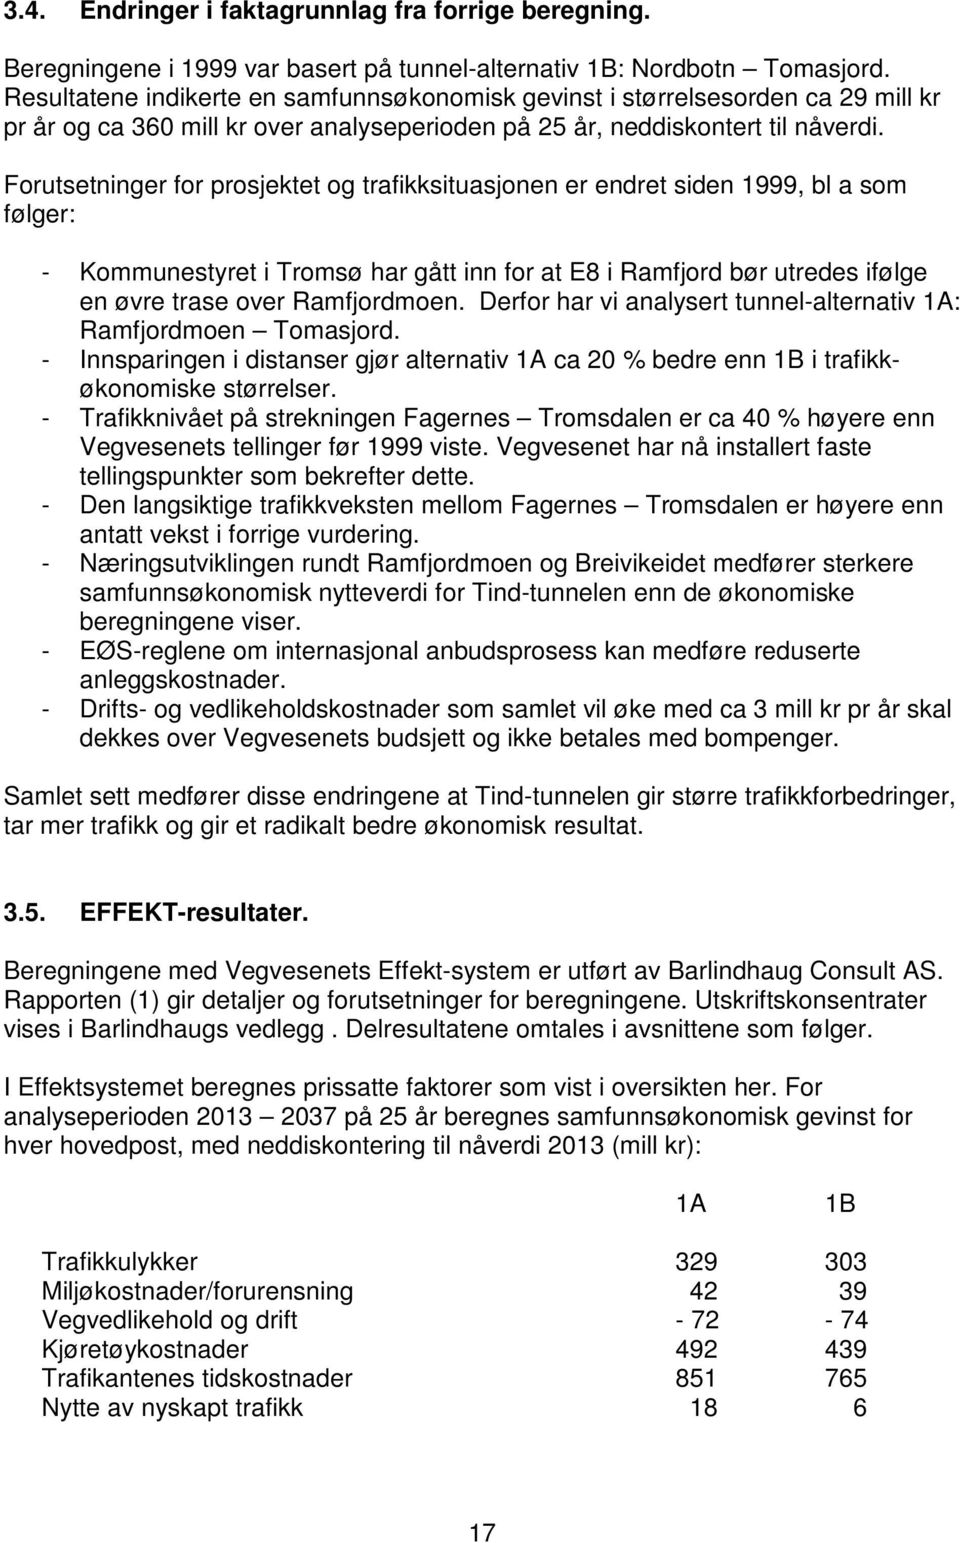 Forutsetninger for prosjektet og trafikksituasjonen er endret siden 1999, bl a som følger: - Kommunestyret i Tromsø har gått inn for at E8 i Ramfjord bør utredes ifølge en øvre trase over